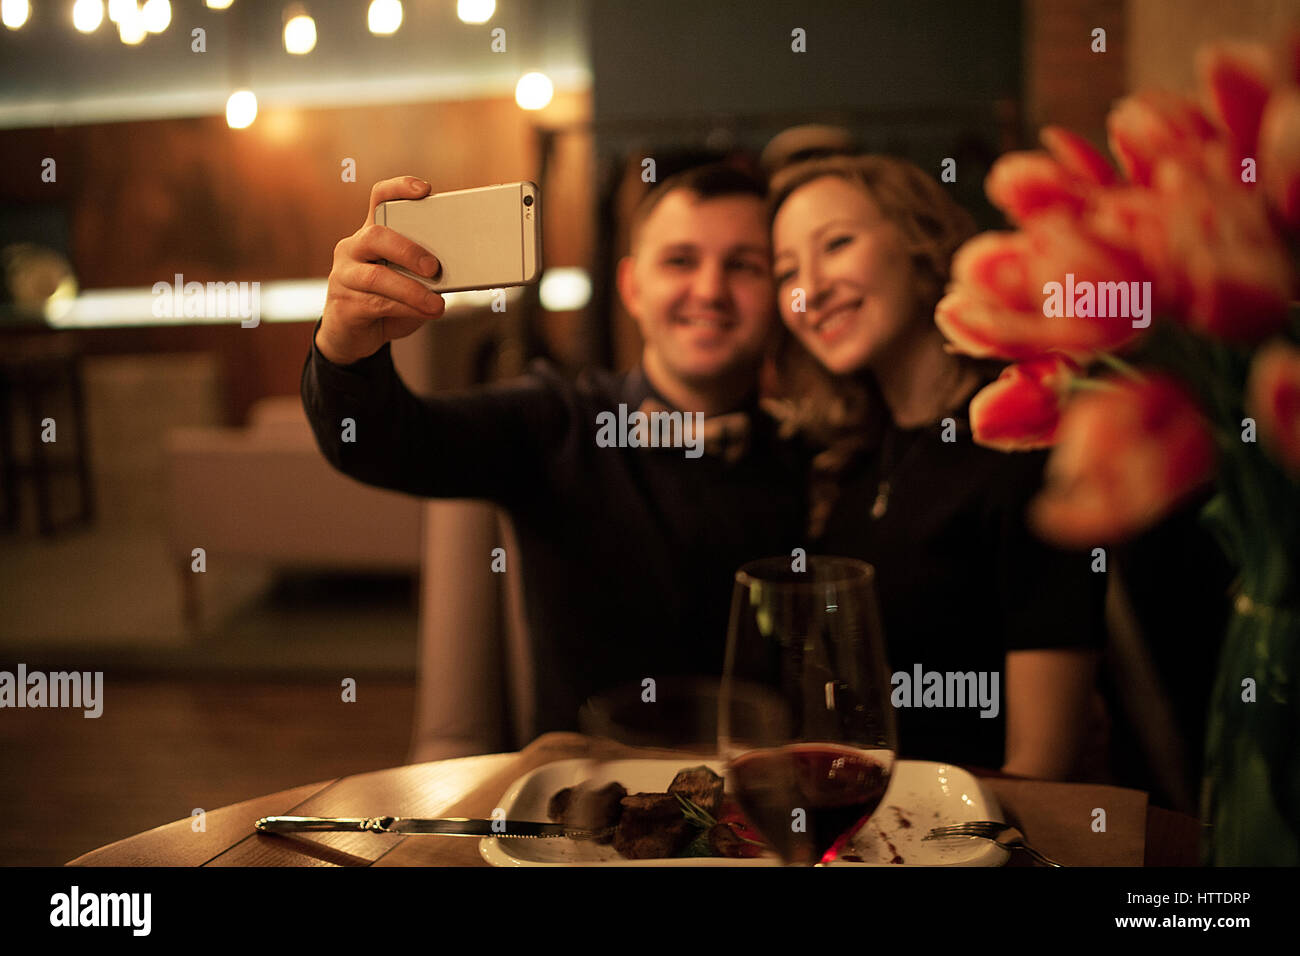 Jeune homme et femme faisant selfy par smartphone dans un restaurant. Avant d'entre eux est le tableau avec des aliments et des verres de vin. Banque D'Images